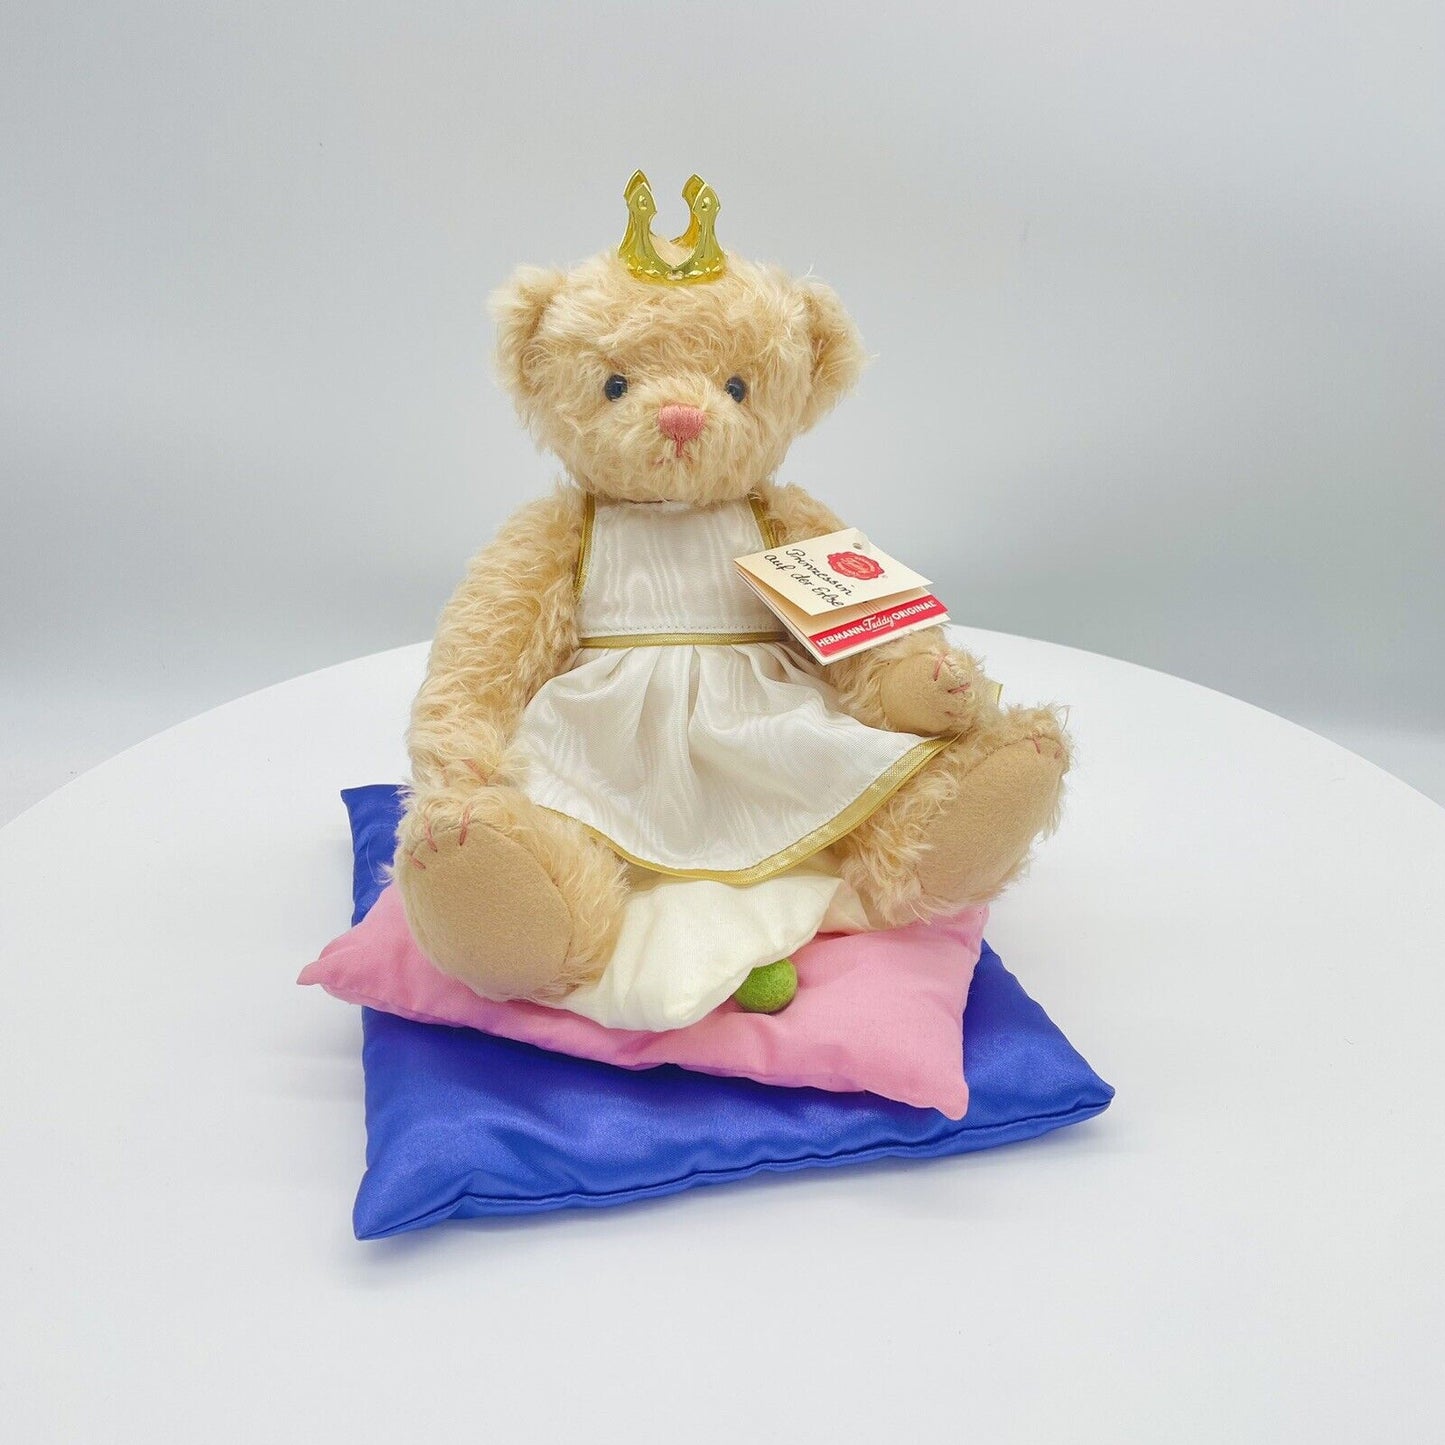 Hermann Teddy Märchenserie Teddybär Prinzessin auf der Erbse limitiert 600